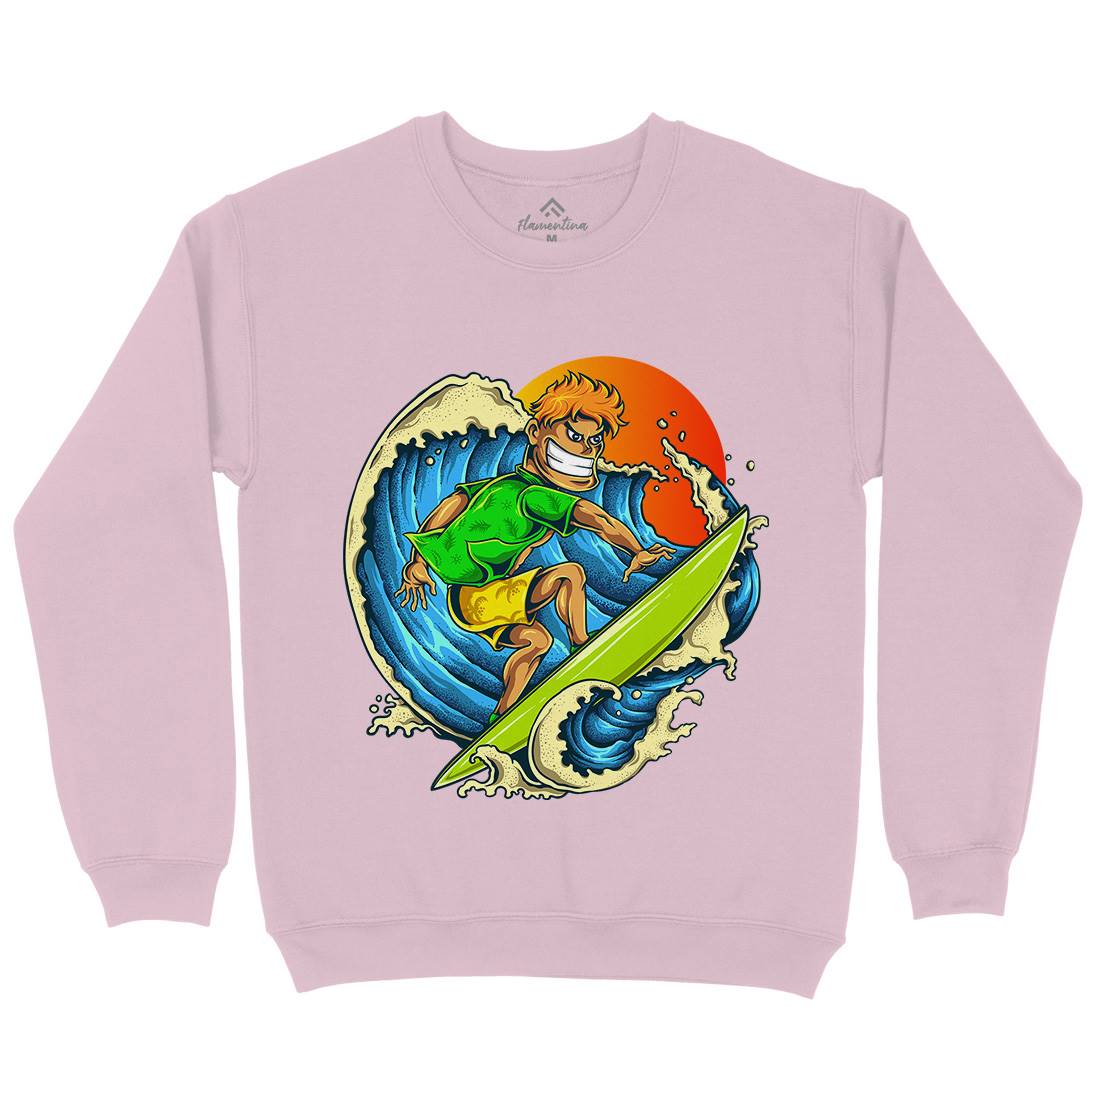 Pro Surfer Kids Crew Neck Sweatshirt Surf A454